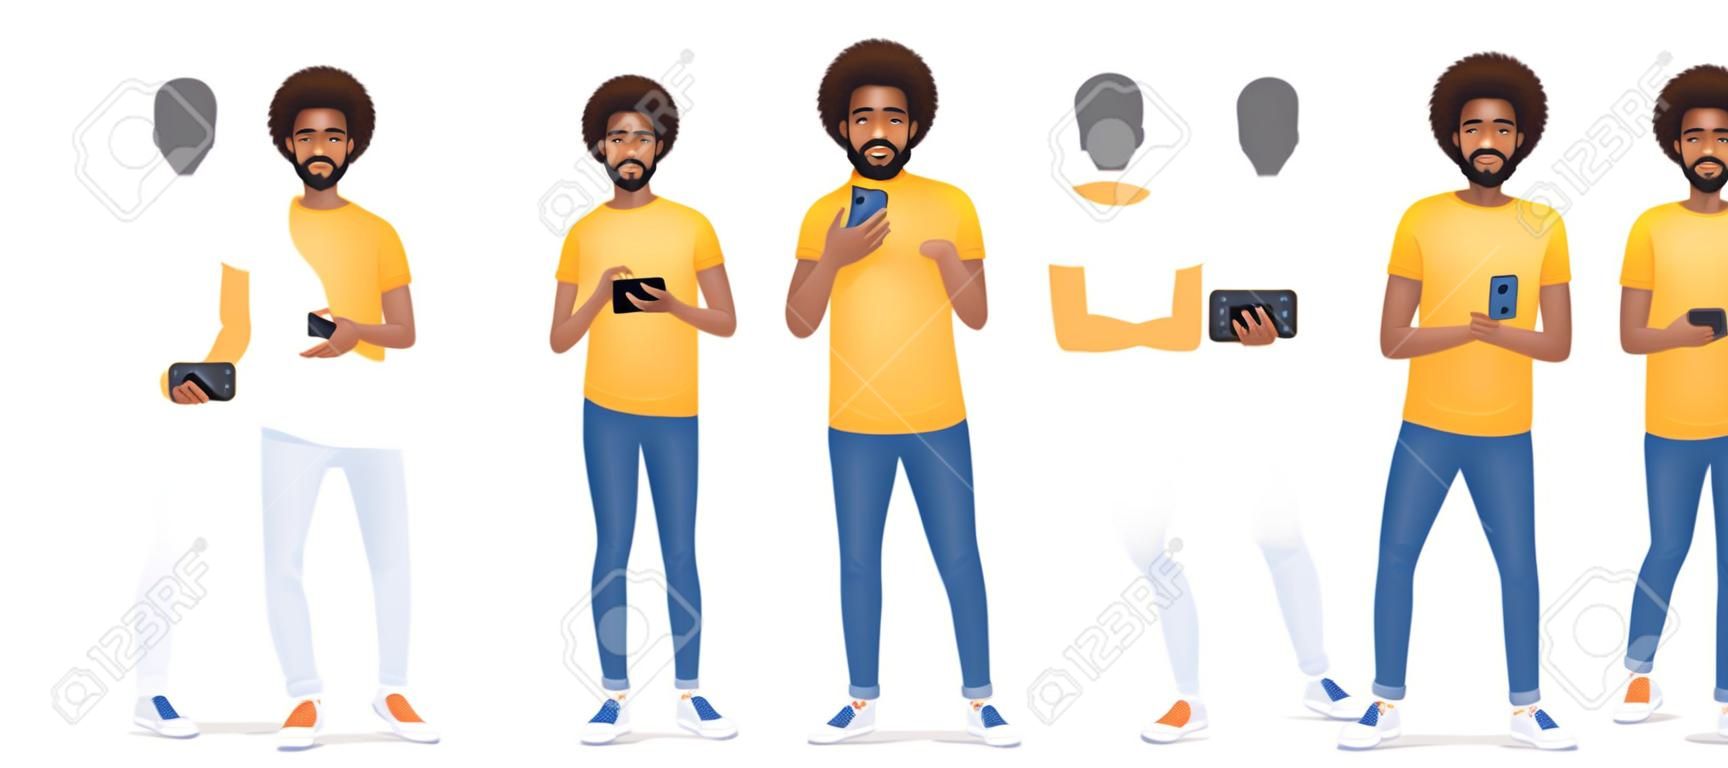 Jeune homme africain avec téléphone